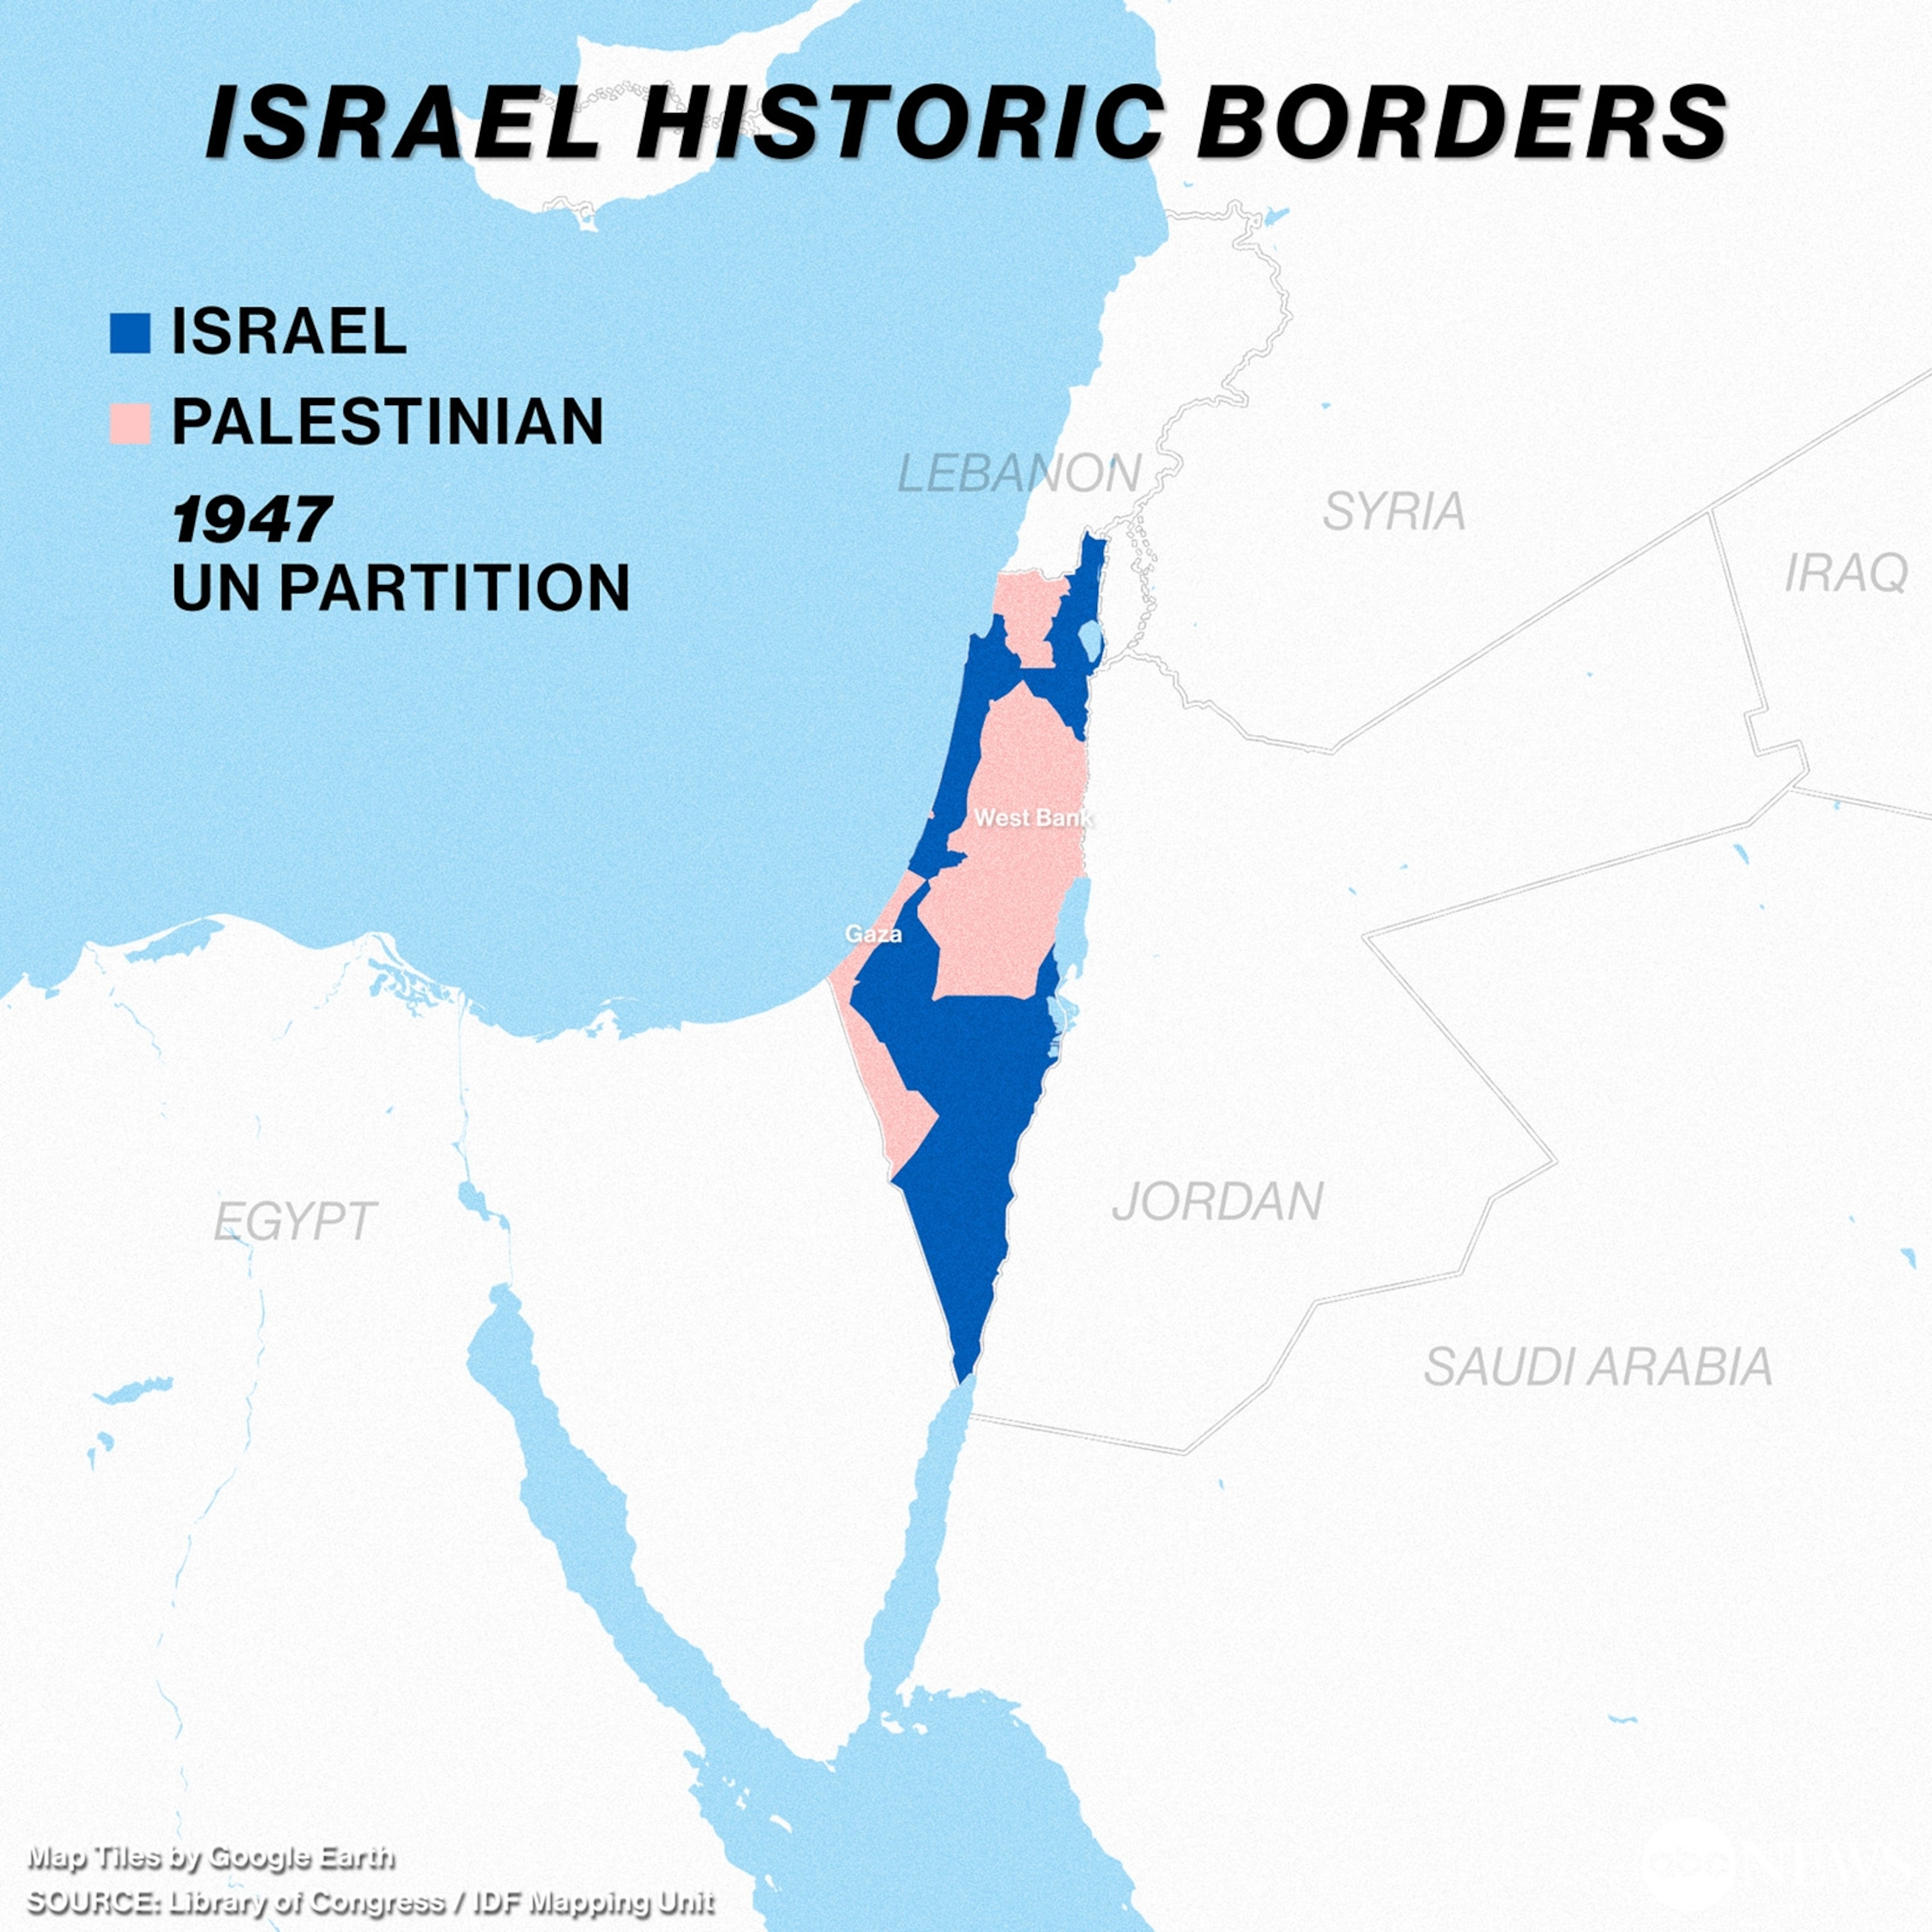 1947 UN Partition